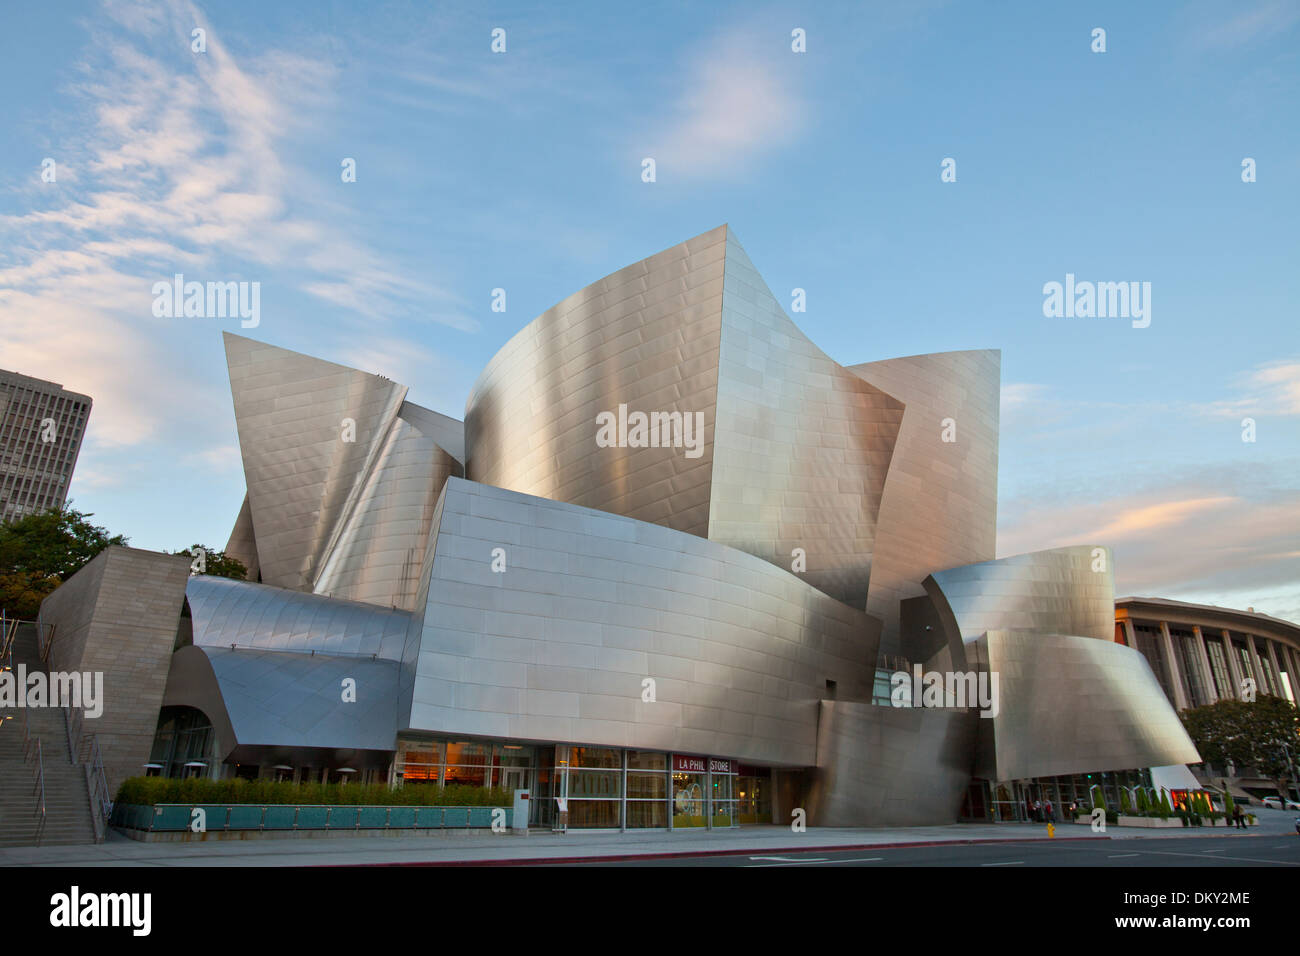 Walt Disney Concert Hall von Frank Gehry, Los Angeles Music Center, Grand Avenue, die Innenstadt von Los Angeles, Kalifornien, USA Stockfoto